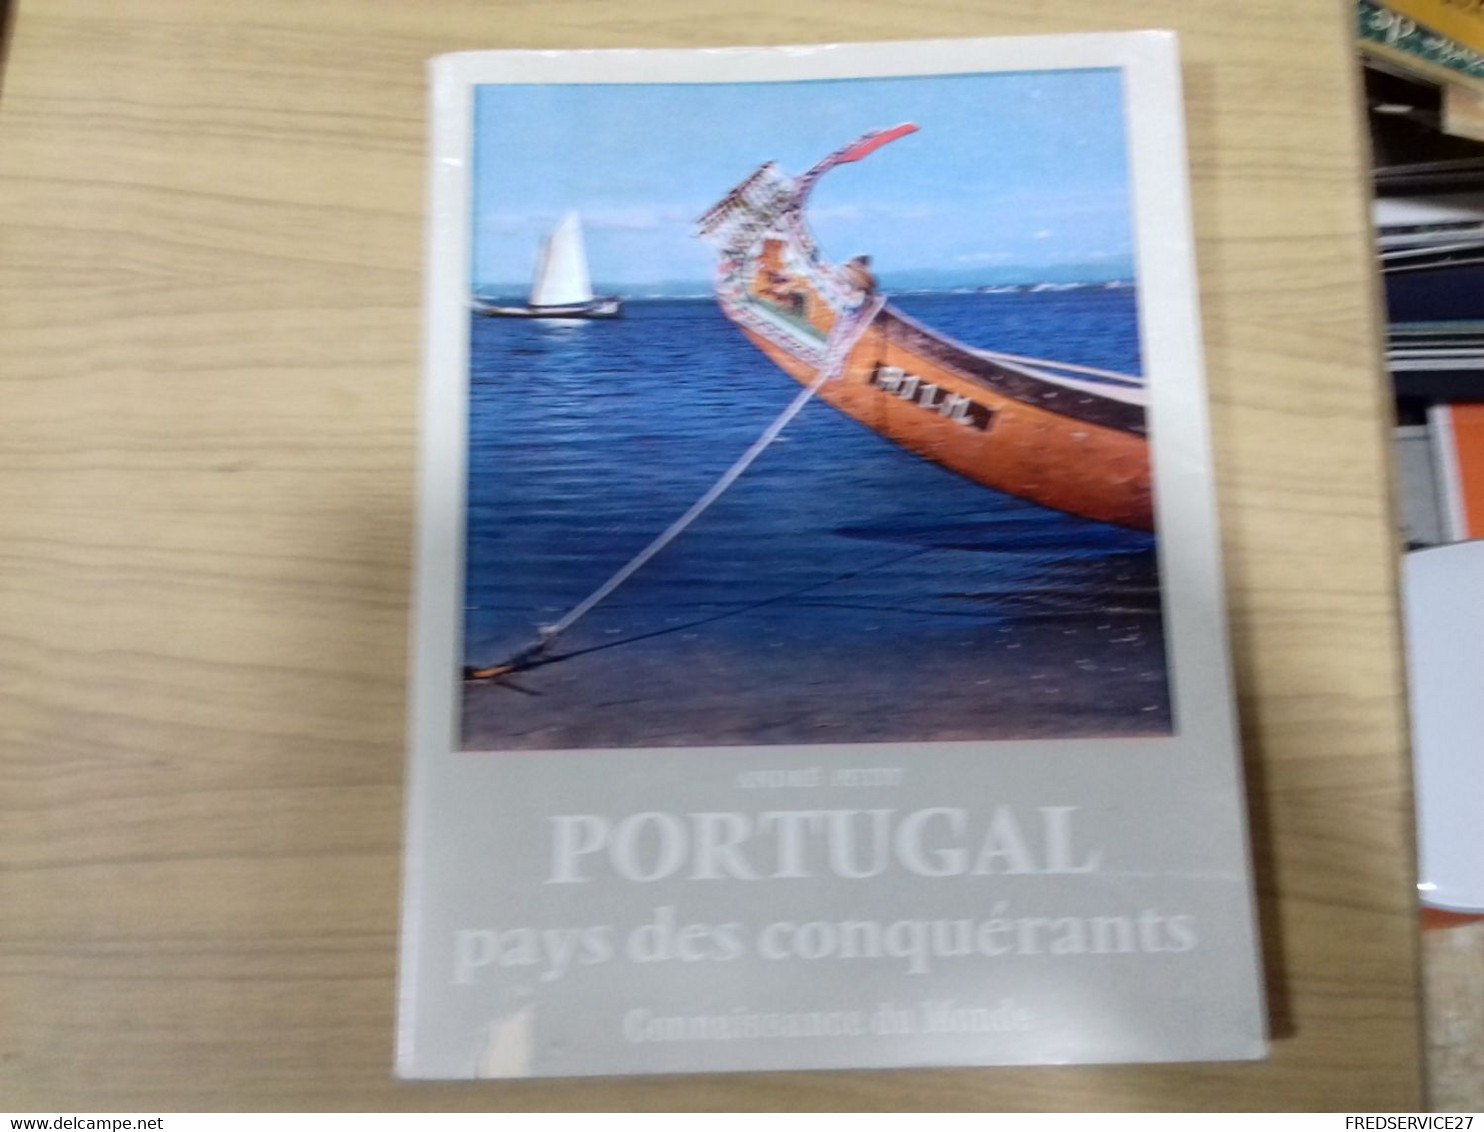 51 //   PORTUGAL  PAYS DES CONQUERANTS   ANDRE PETIT  137 PAGES - Livres Dédicacés